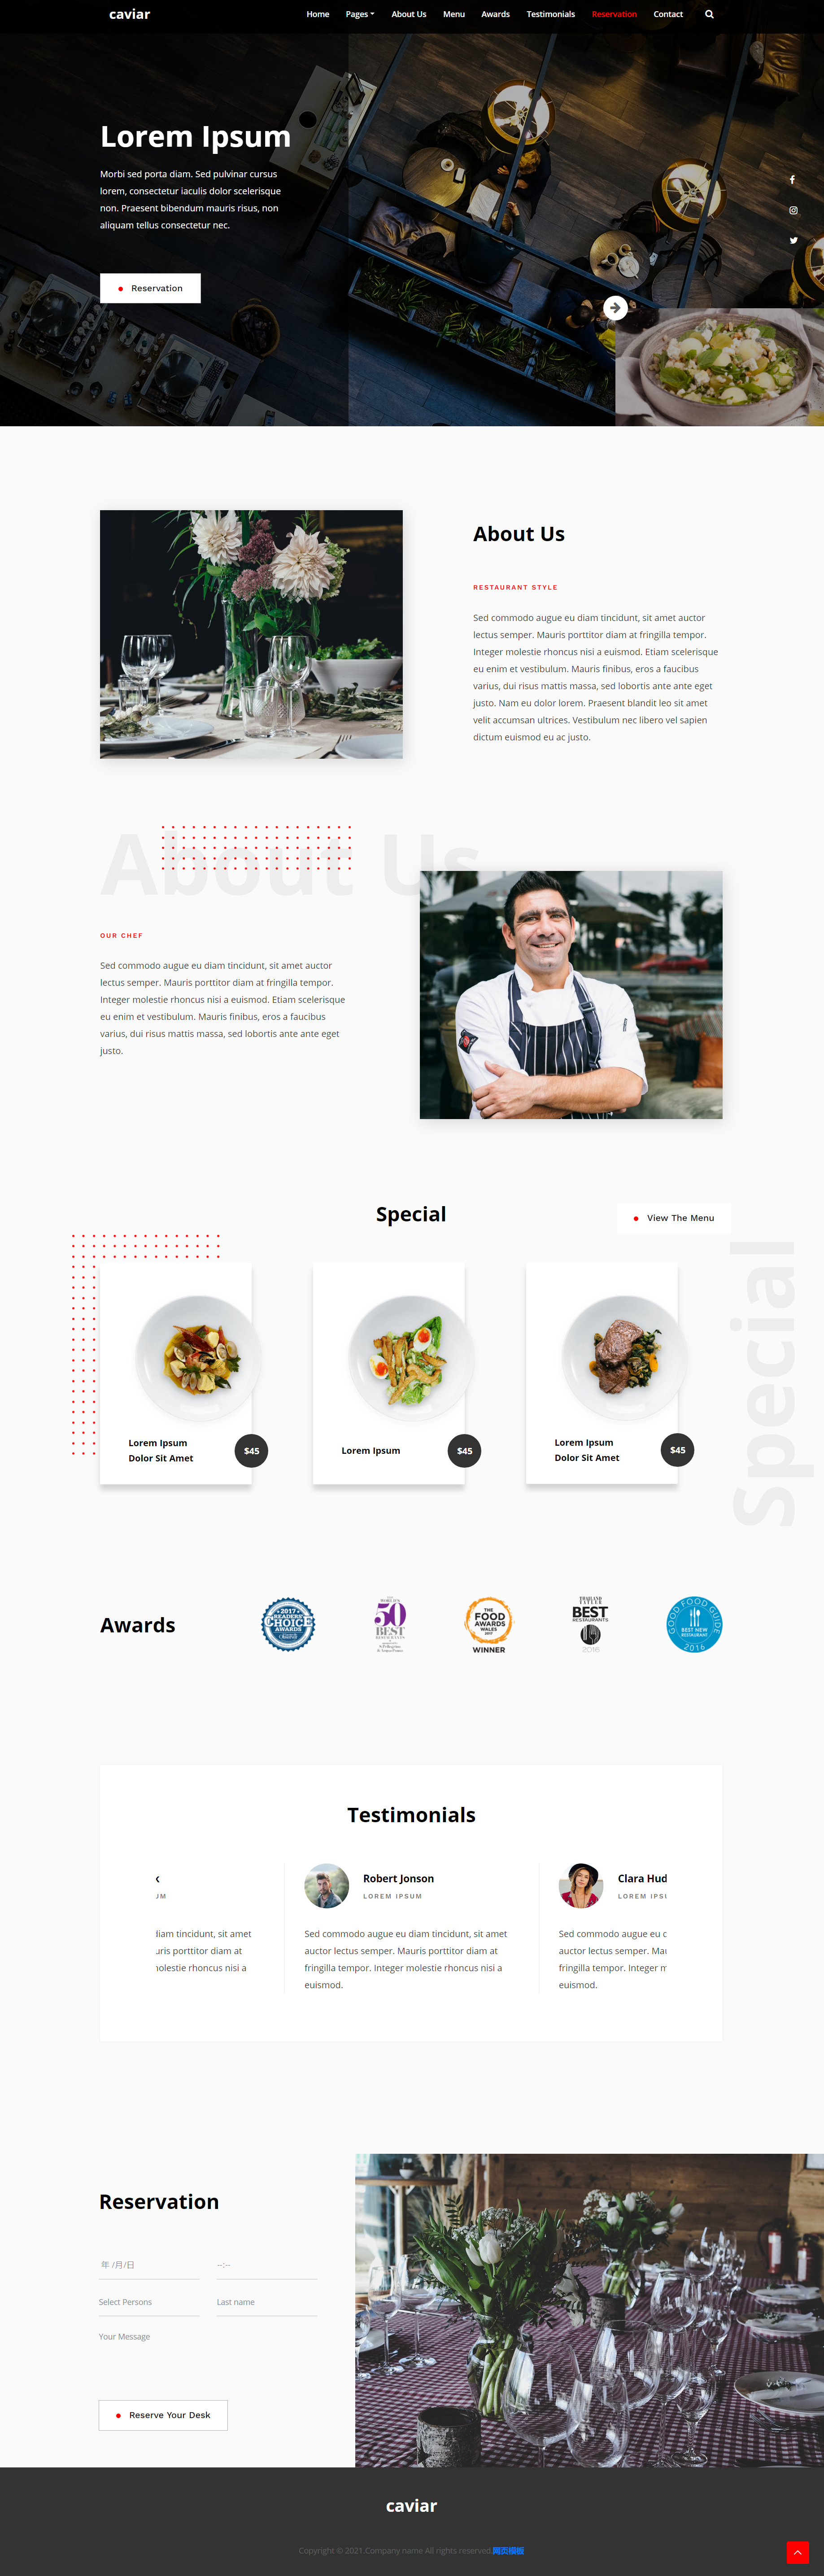 红色简洁风格响应式餐饮公司菜品企业网站模板